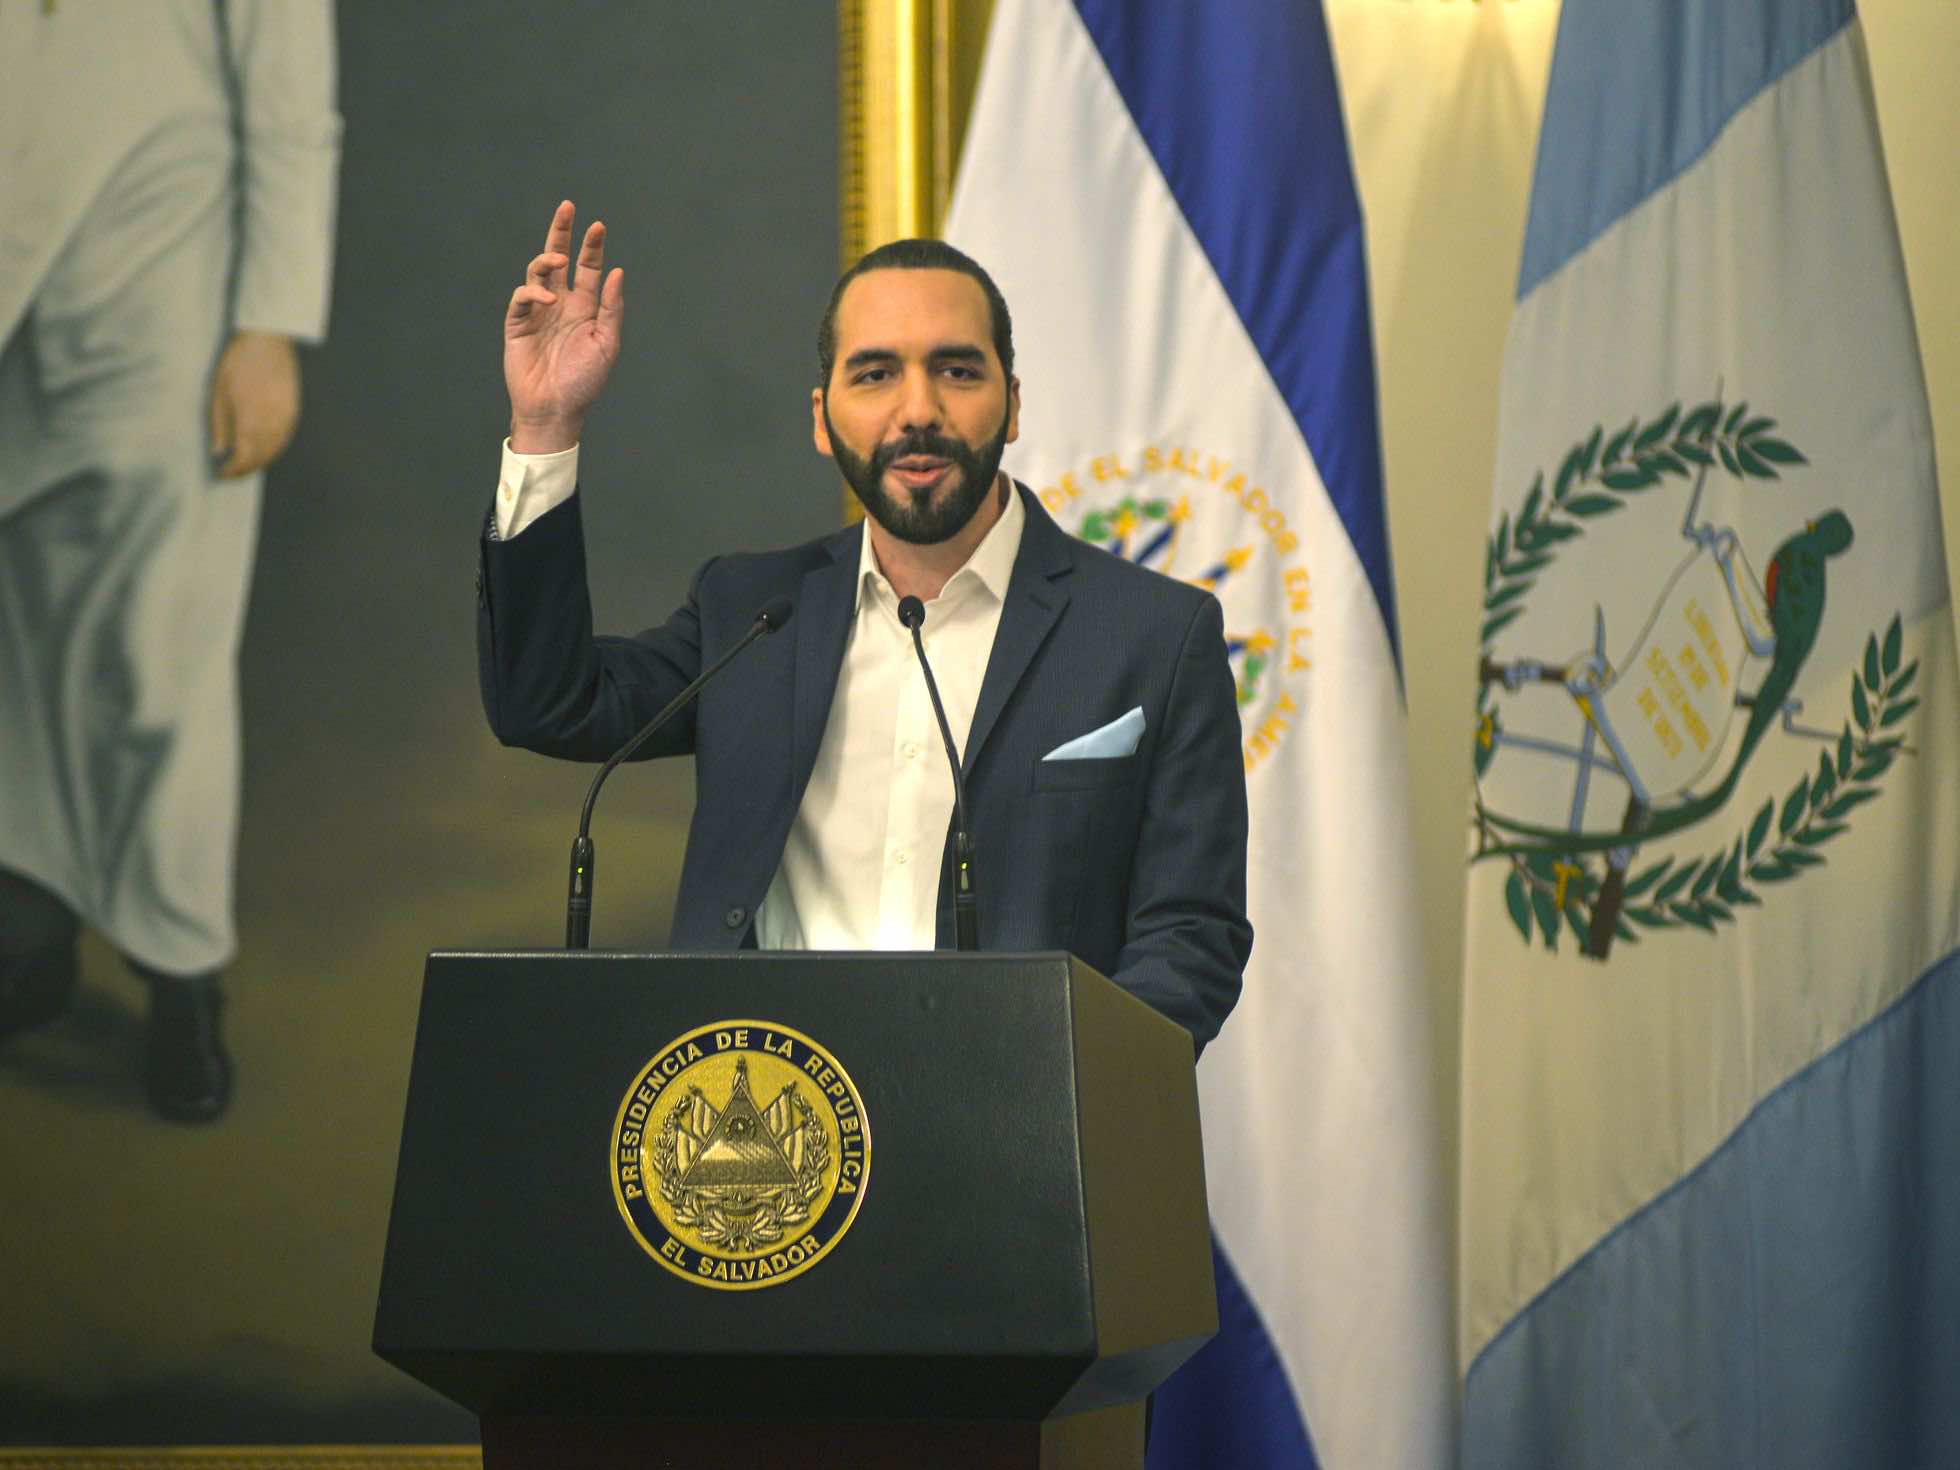 El Salvador Coolest Dictator